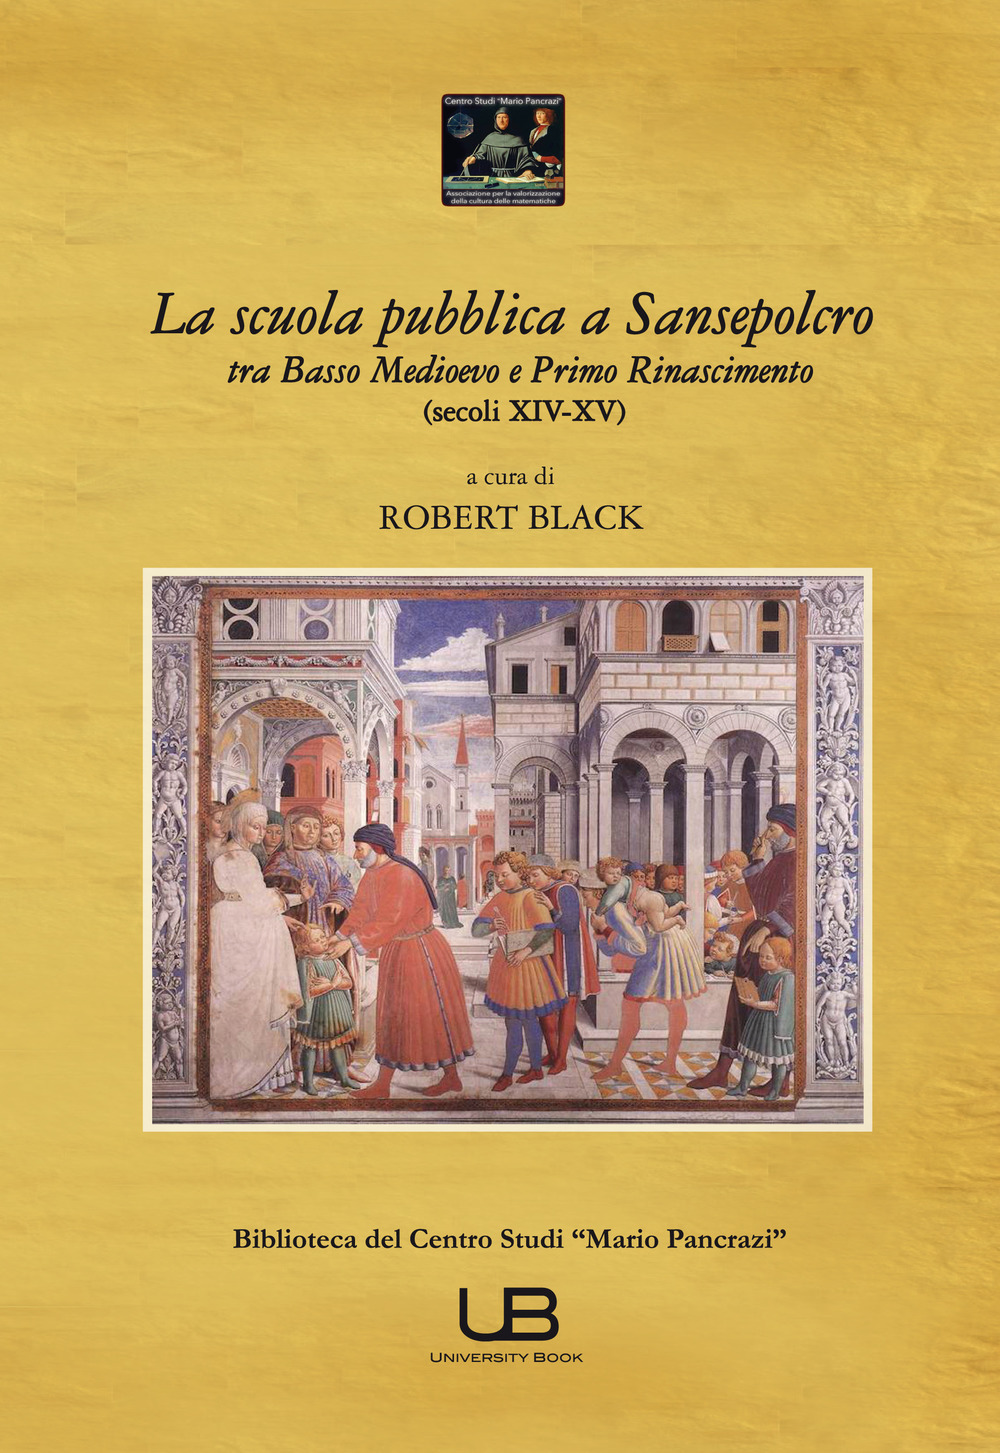 La scuola pubblica a Sansepolcro tra basso medioevo e primo Rinascimento (secoli XIV-XV)